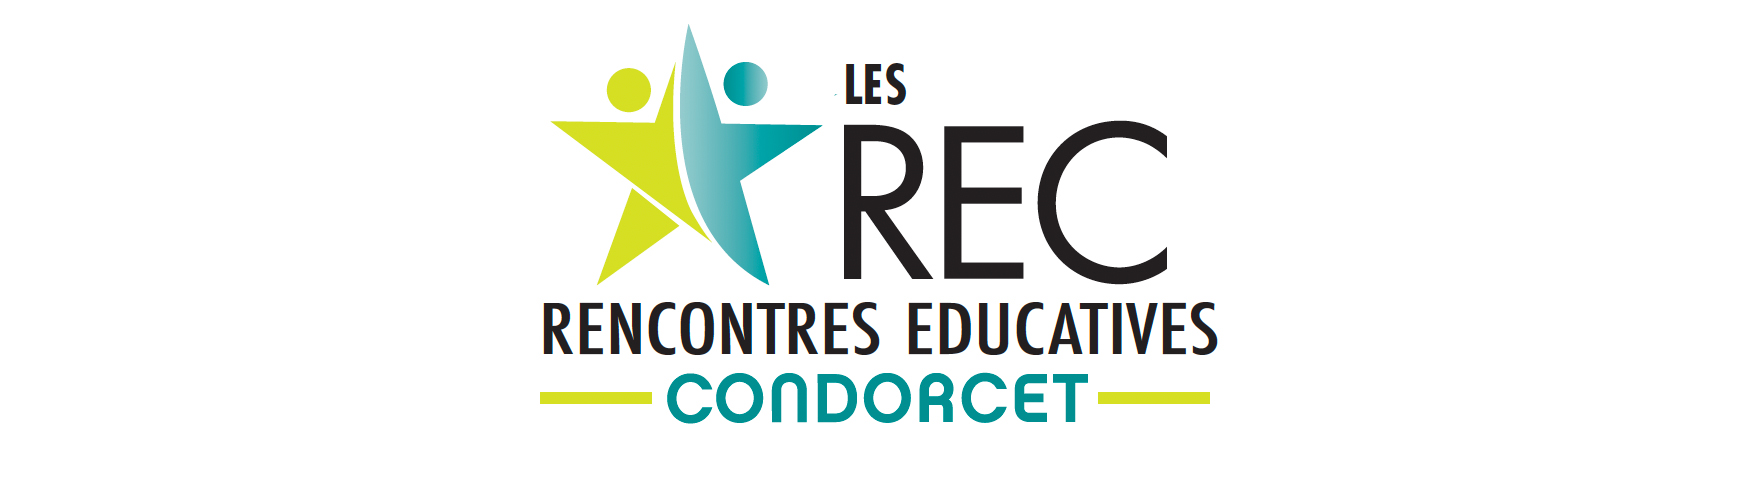 Les Rencontres Éducatives Condorcet REC